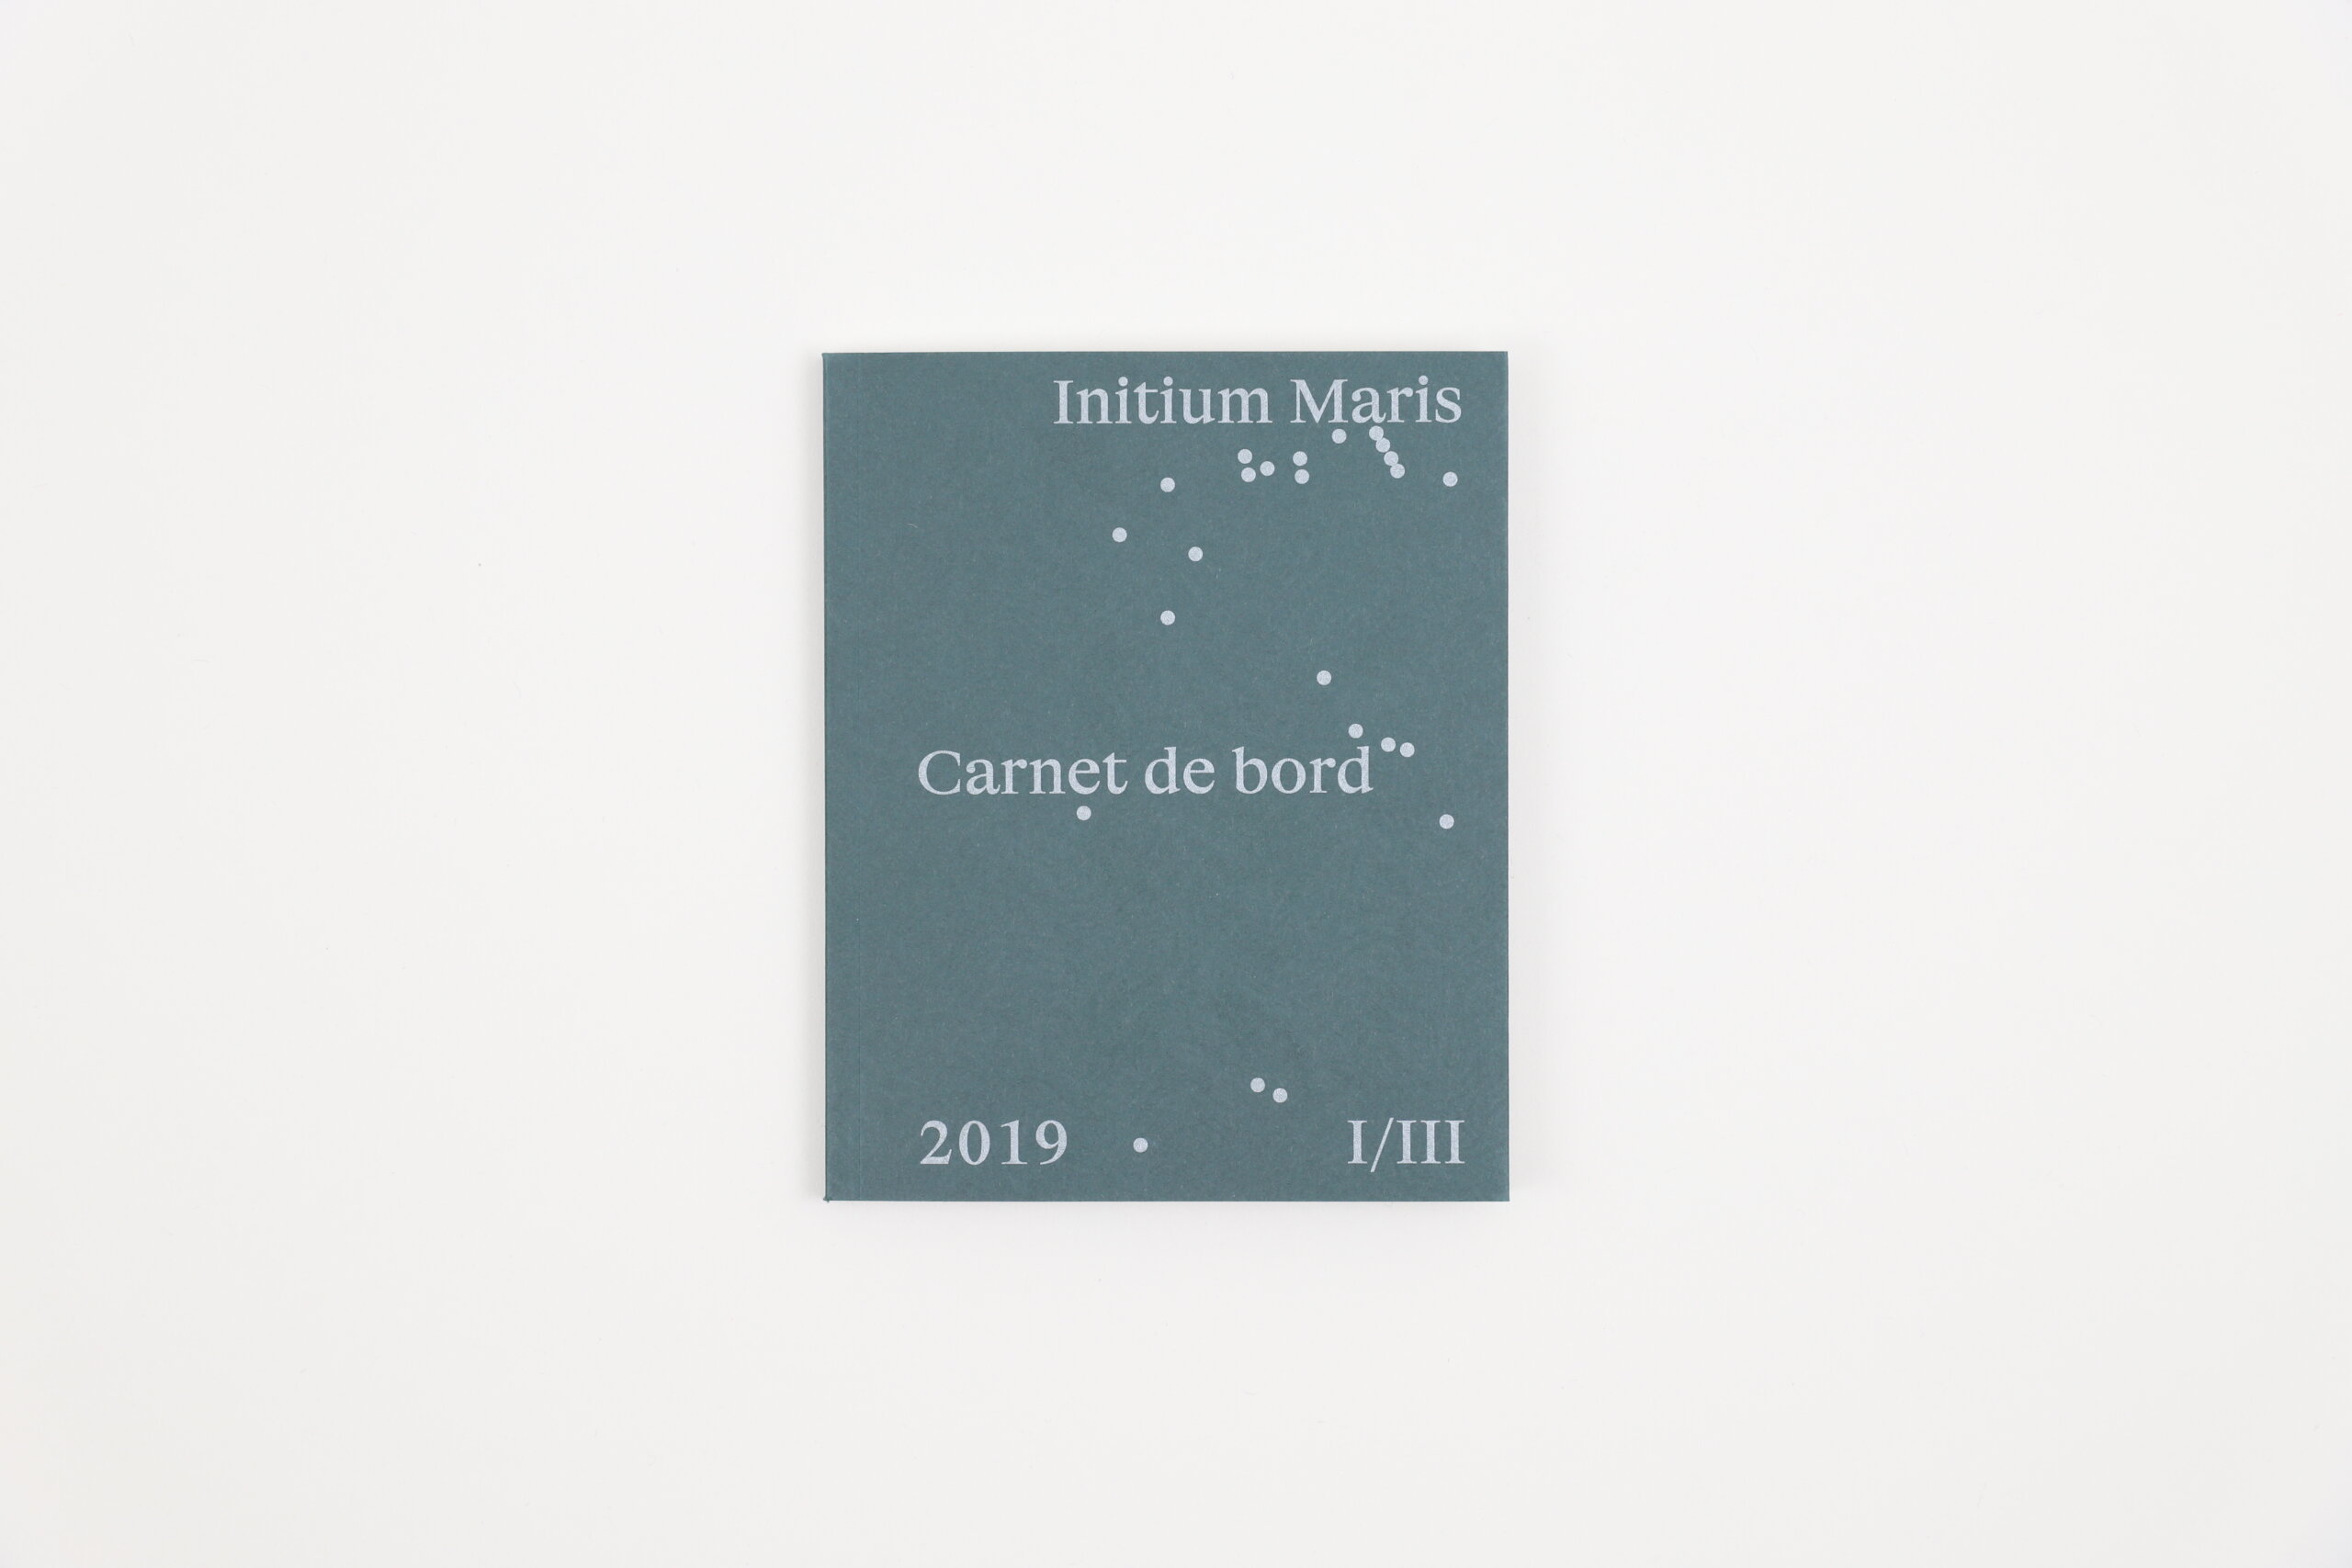 Initium-Maris-Nicolas-Floch-Gwinzegal-cover